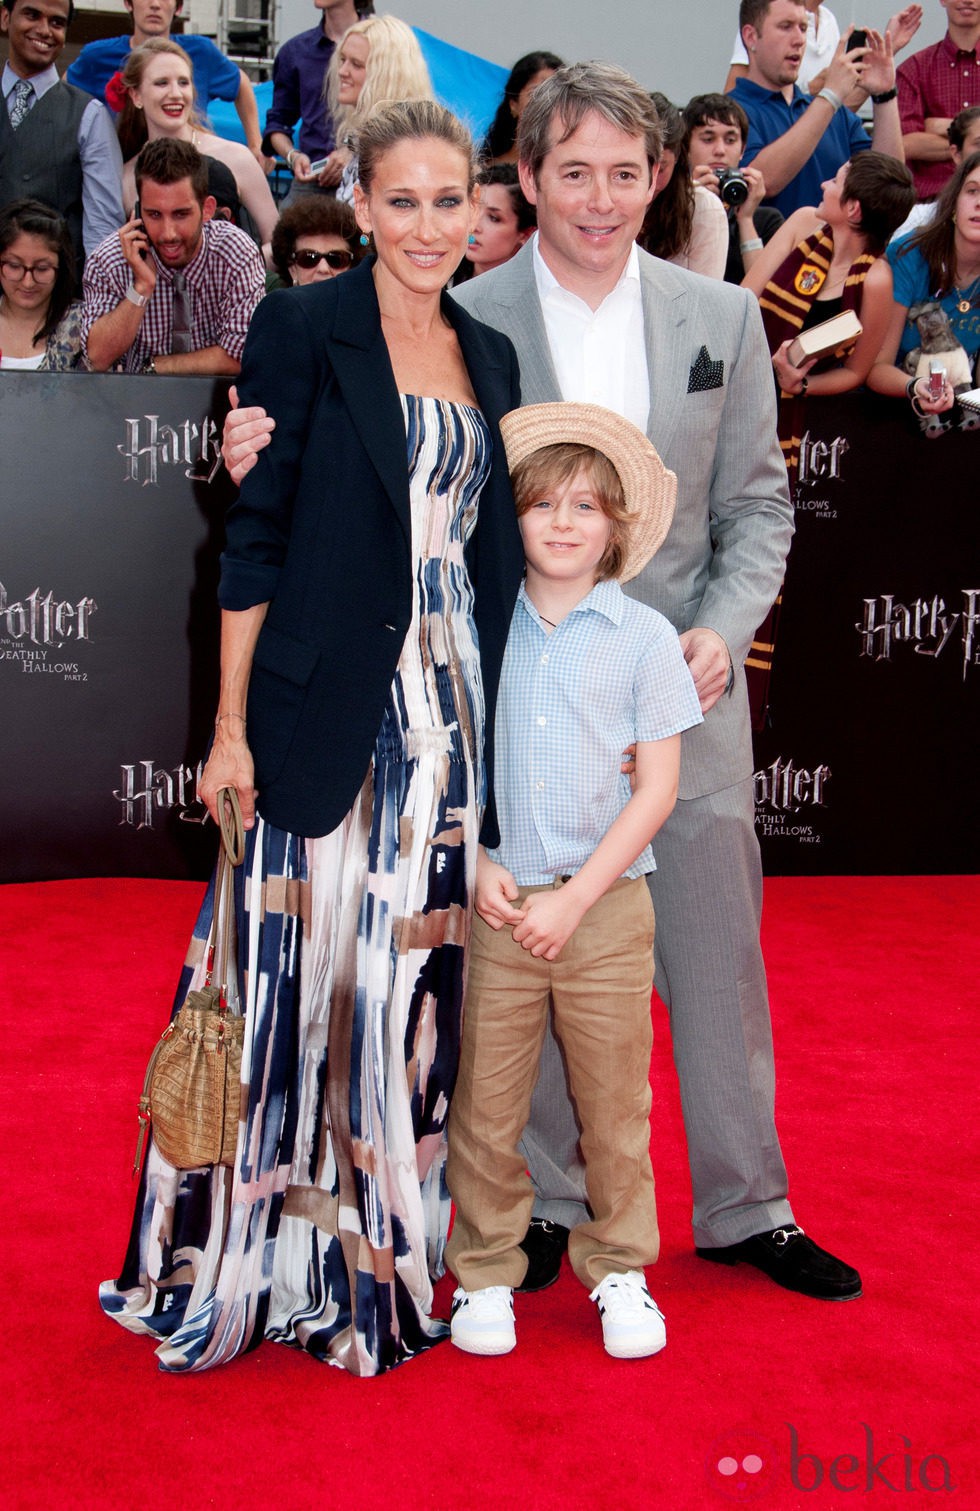 Sarah Jessica Parker y Matthew Broderick con su hijo en la premiére de Harry Potter